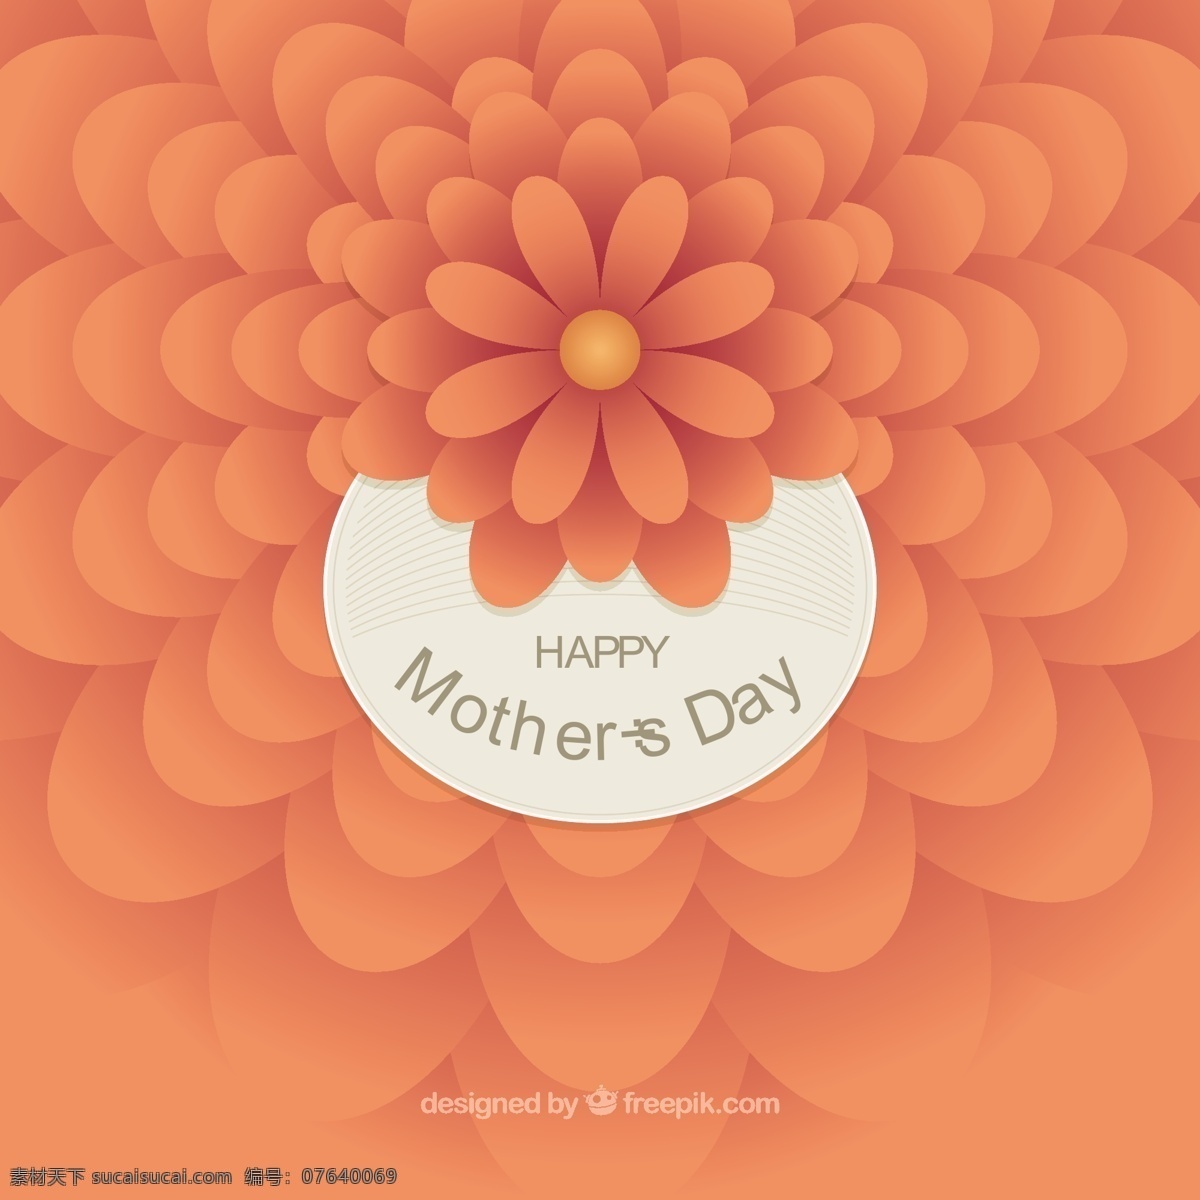 母亲节 背景 抽象 橙色 花朵 花卉 爱情 家庭 花卉背景 庆祝 母亲 爱的背景 父母 风格 天 可爱